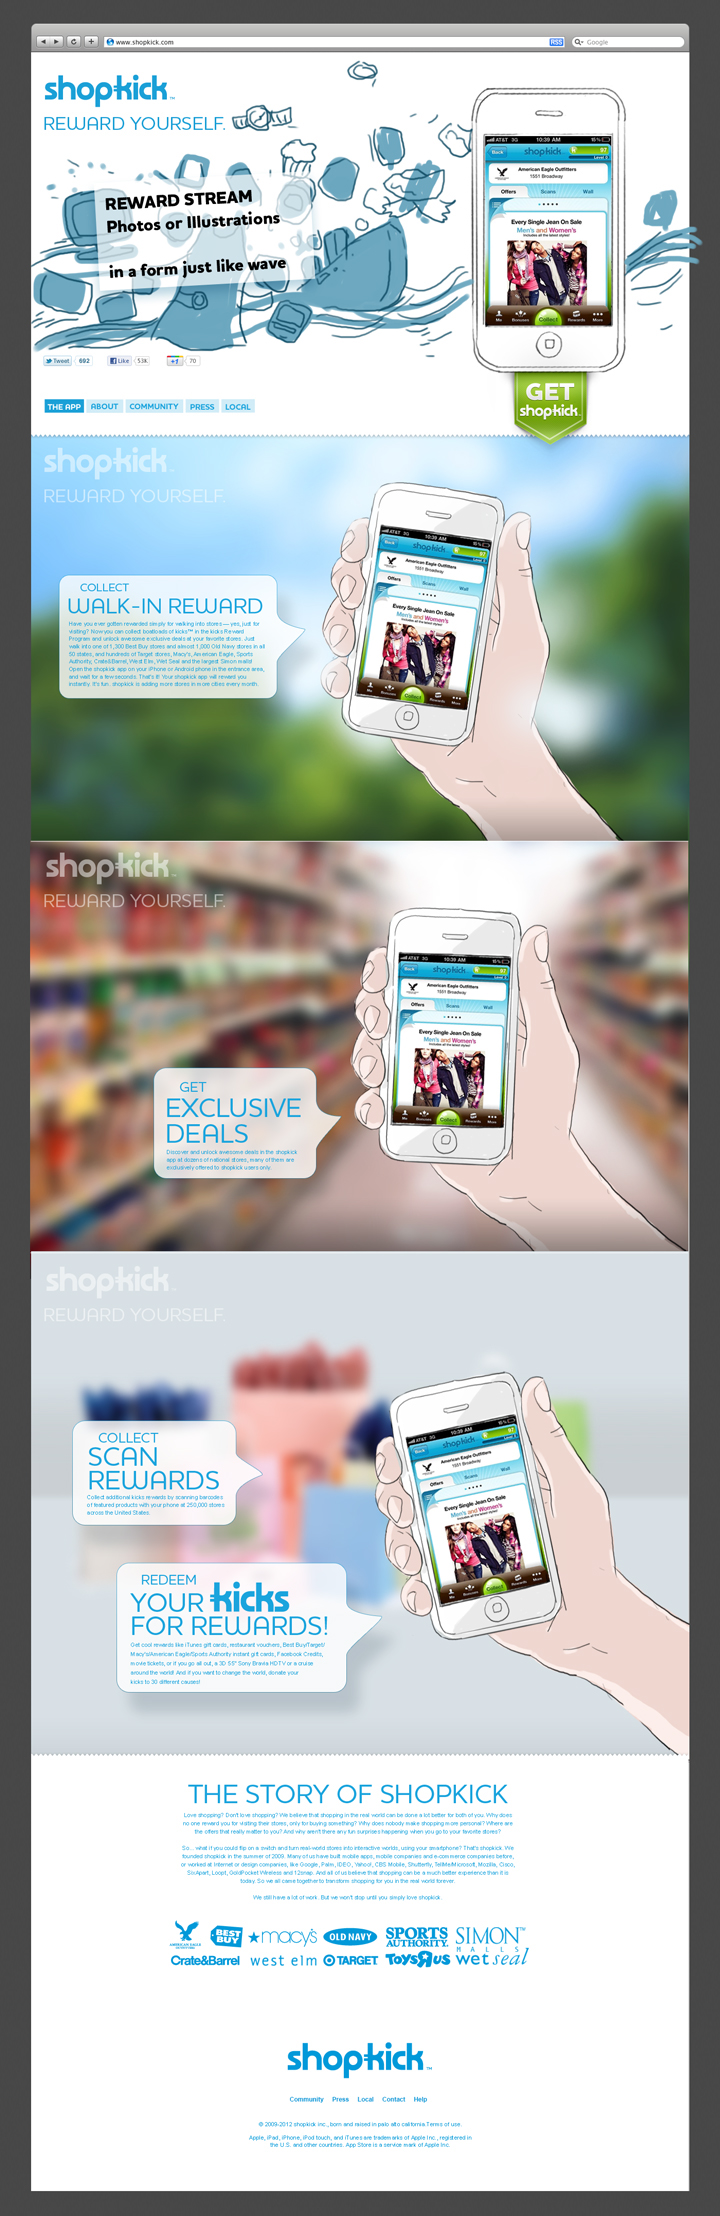 shopkick Web design